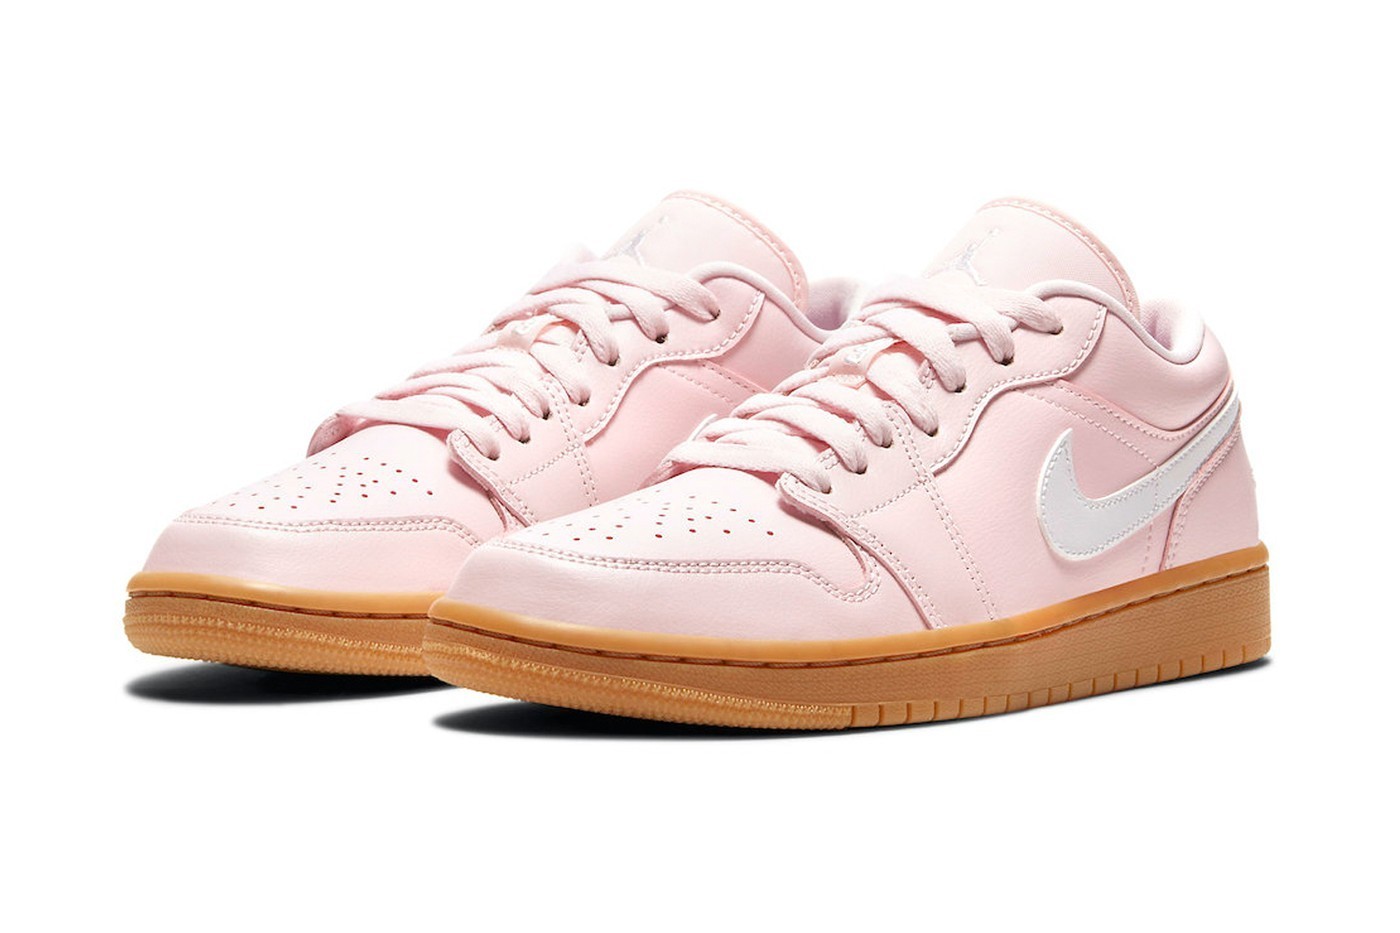 预告:nike官网 aj 1 low arctic pink 配色女款球鞋抢先看图 售价$